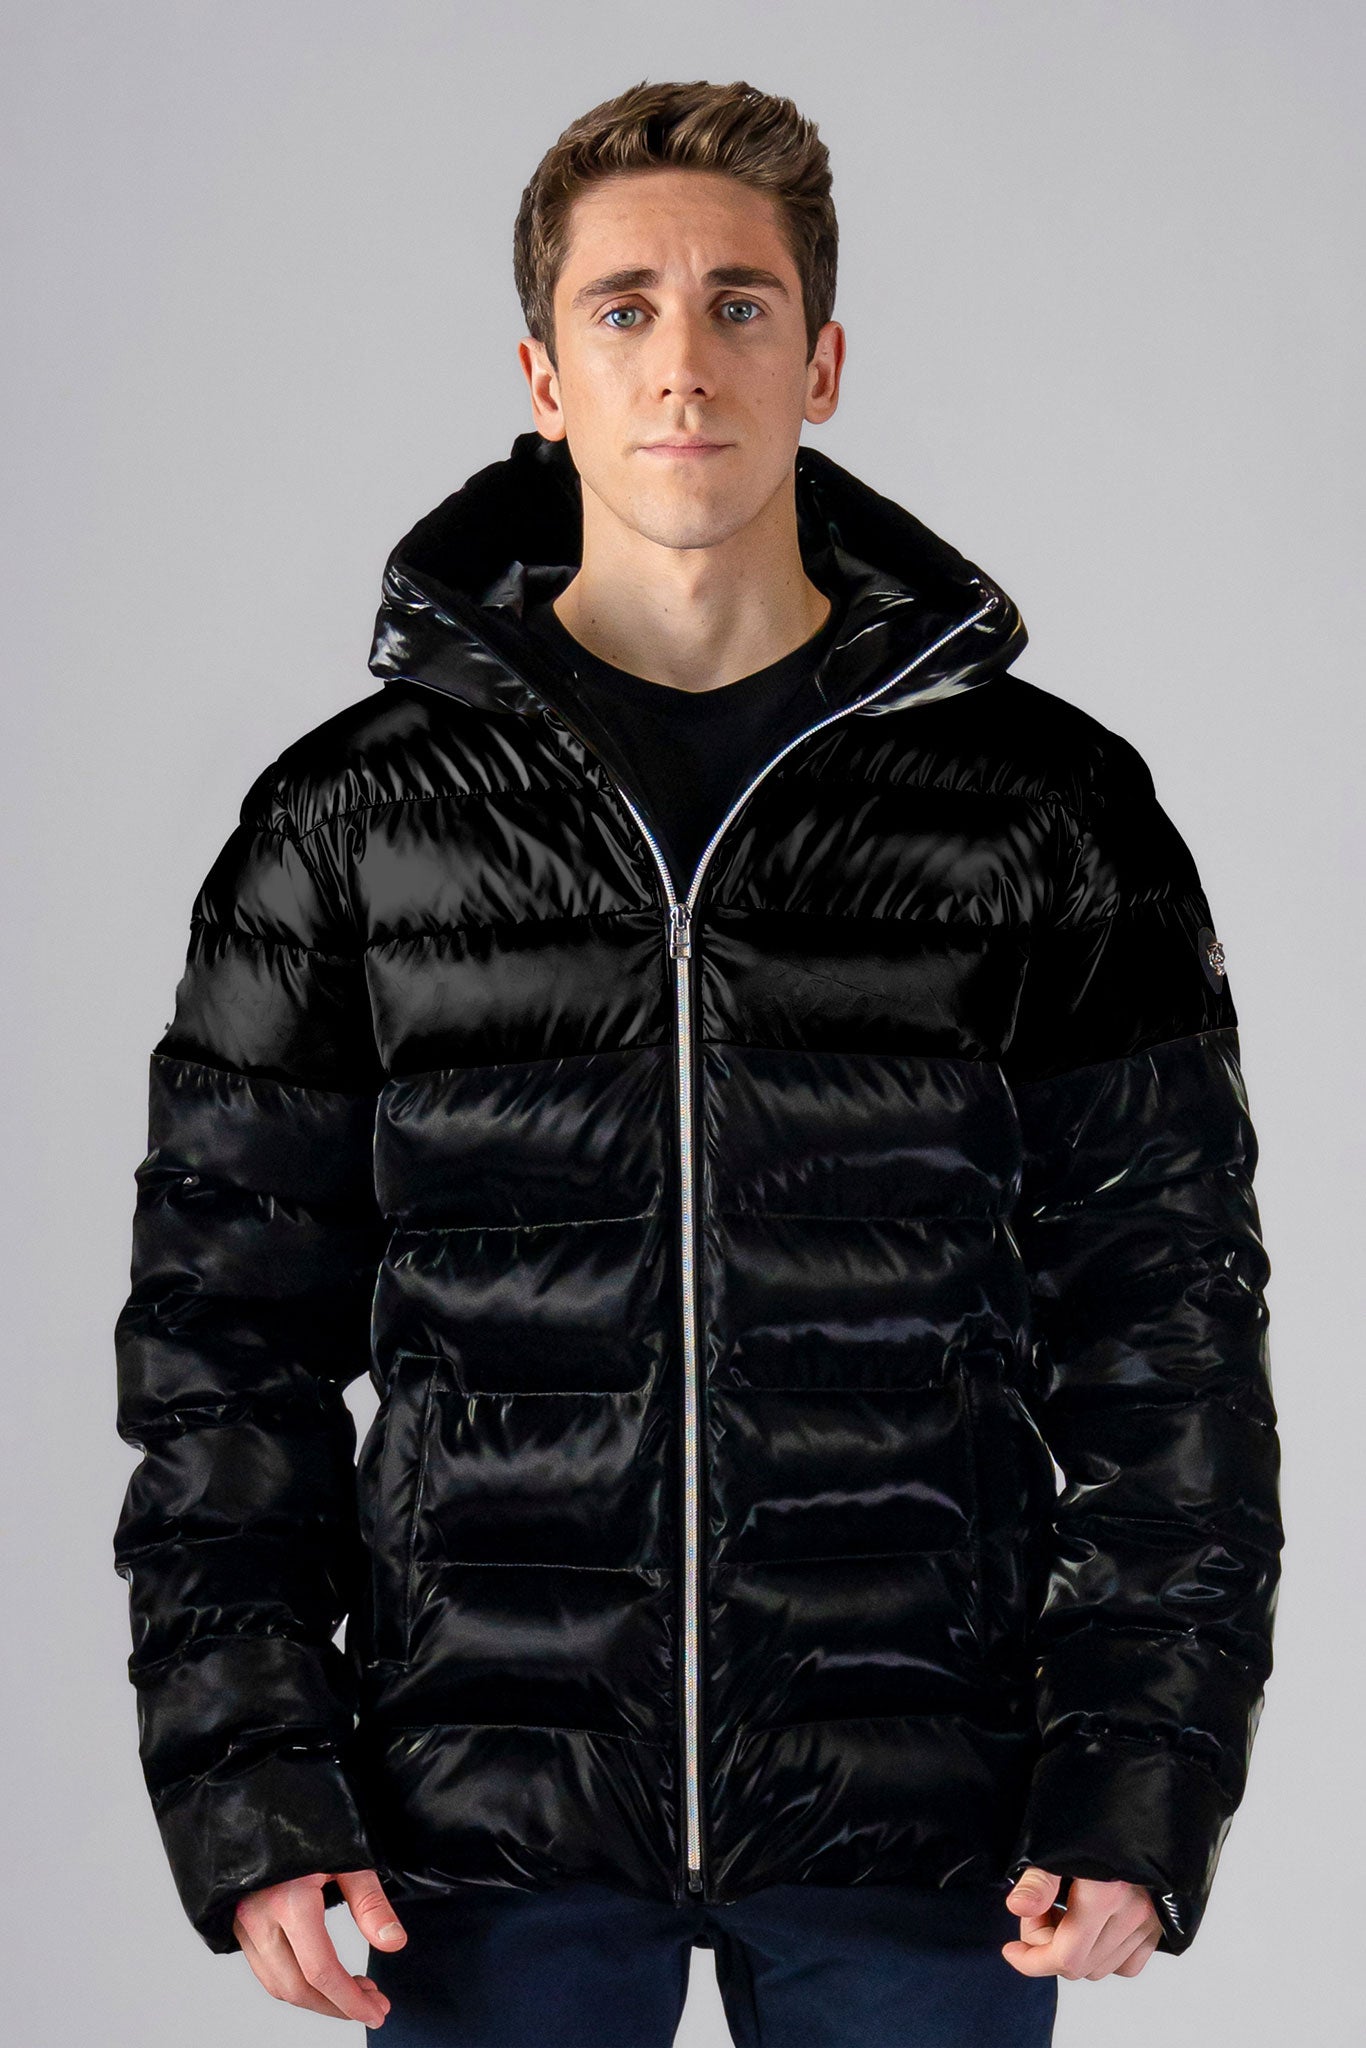 Woodpecker Men's Sparrow Winter coat. High-end Canadian designer winter coat for men in 